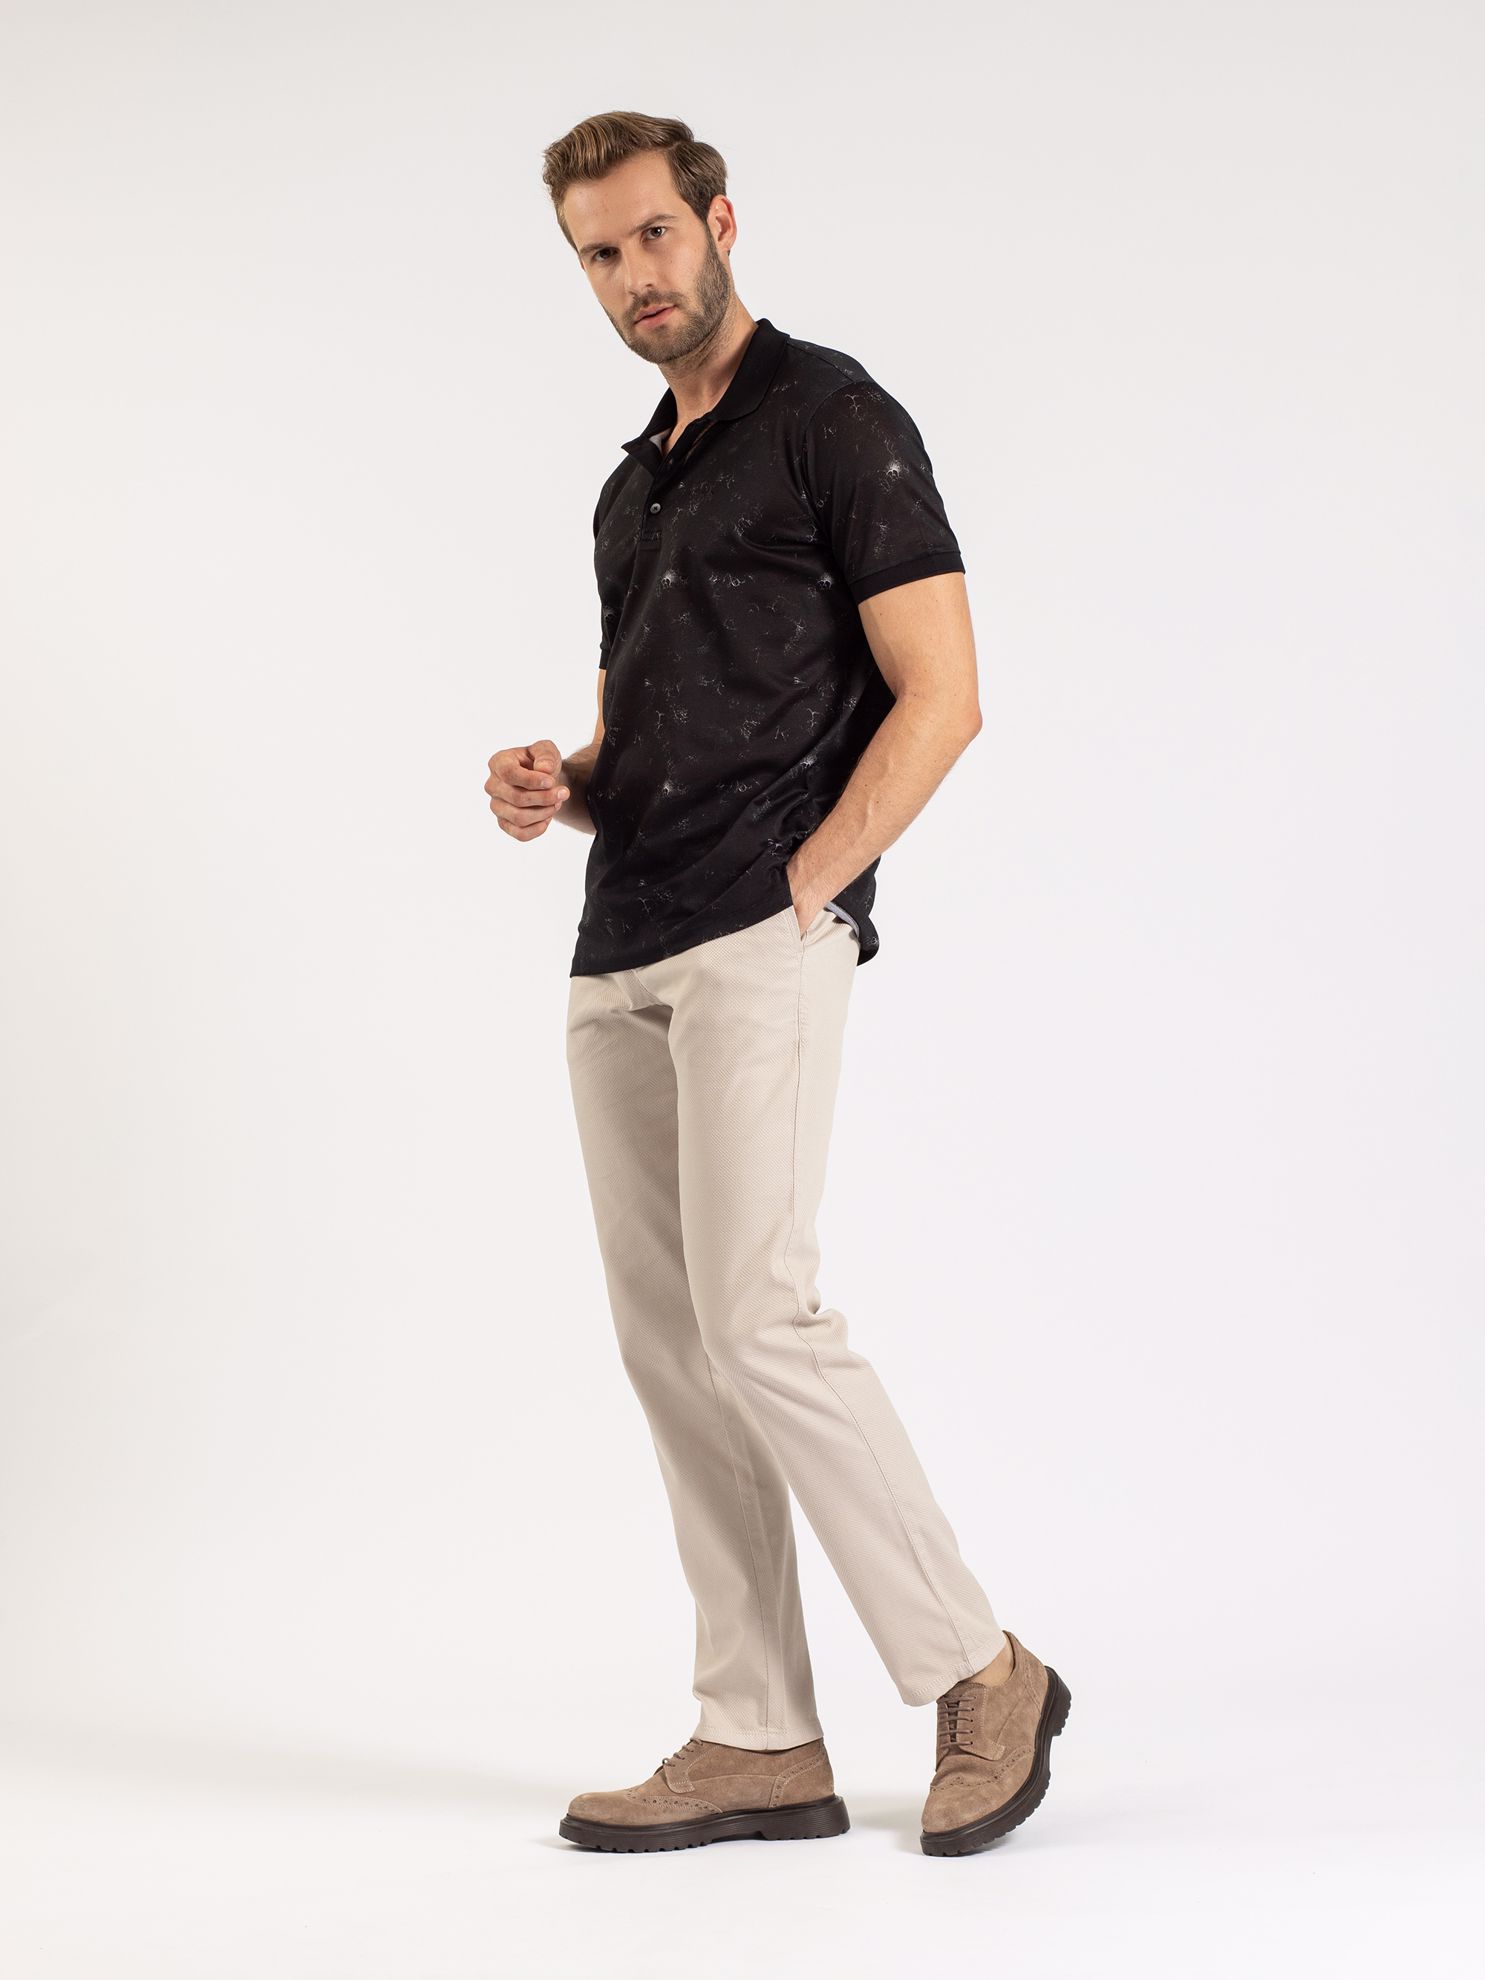 Karaca Erkek Slim Fit Polo Yaka Tişört-Siyah. ürün görseli